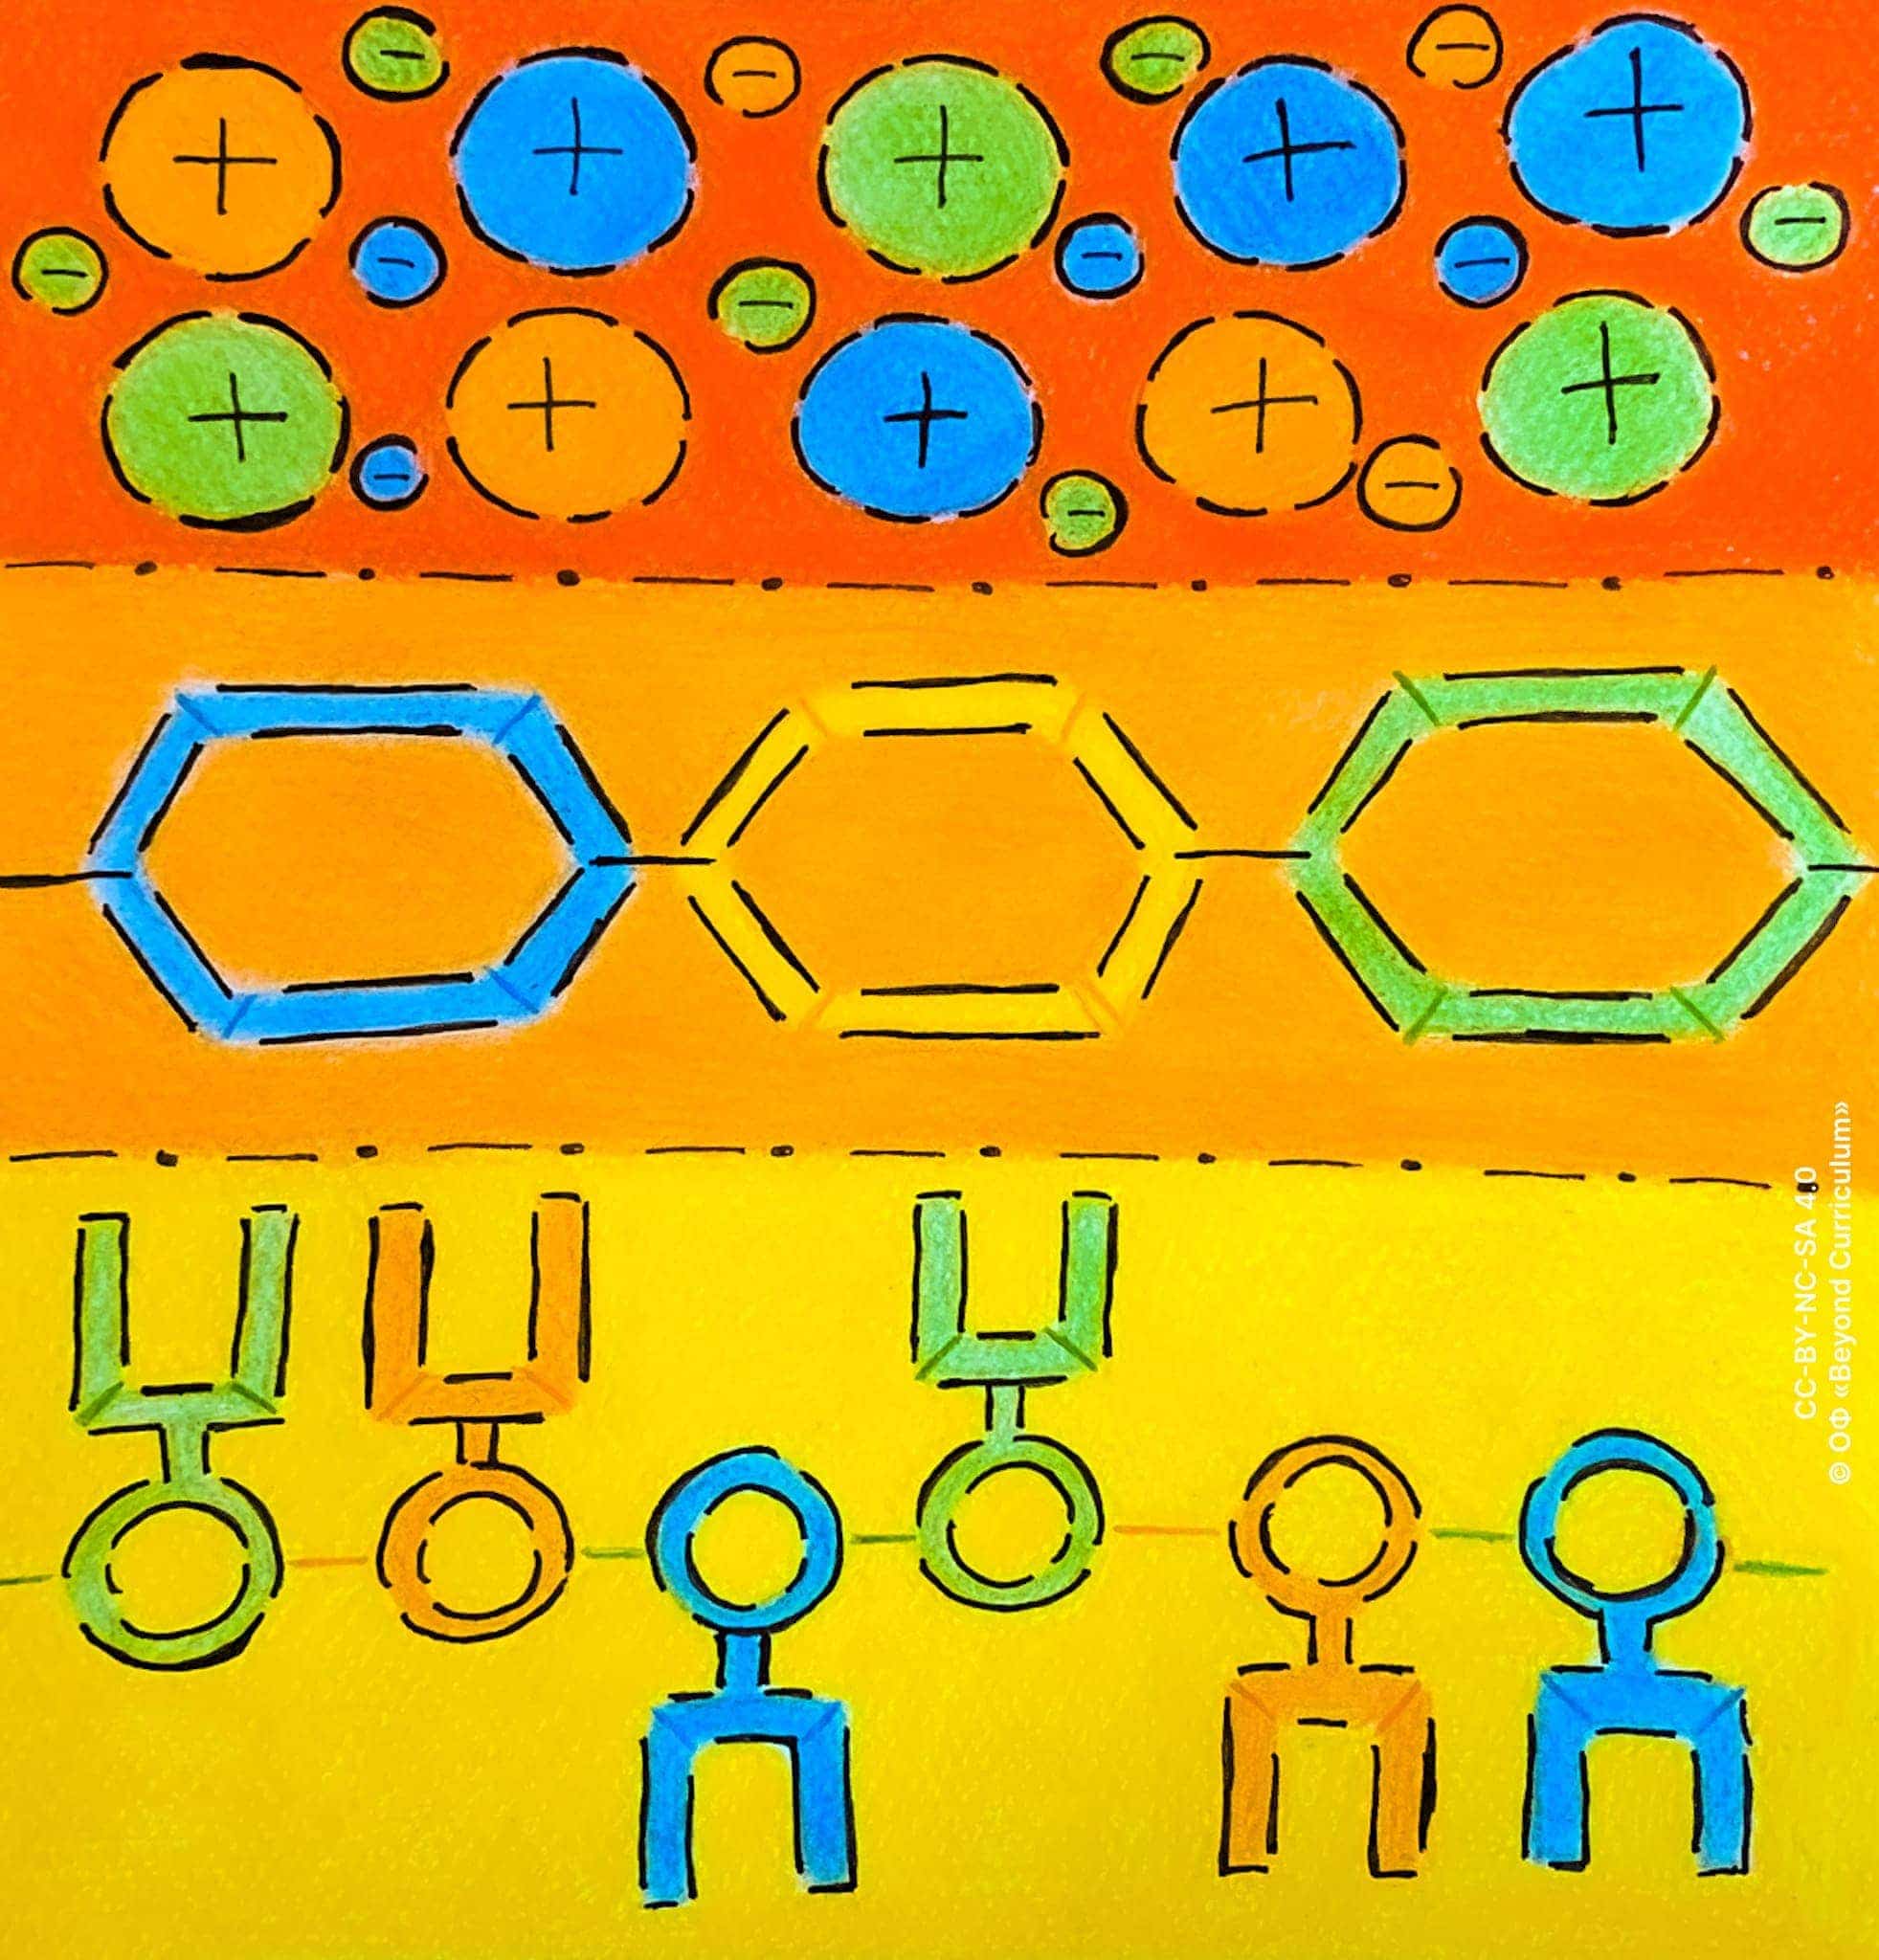 Первая связь (сверху) – металлическая, изображены положительно заряженные катионы металла и отрицательно заряженные свободные электроны, которые держат катионы вместе. Вторая связь (посередине) – гликозидная, изображены три связанных шестиугольника, которые представляют собой молекулы глюкозы. Третья связь (снизу) – пептидная, изображены связанные шесть колец, обозначающие неизменную часть аминокислот. У каждого кольца есть направленный либо вверх, либо вниз "П"-образный символам, обозначающий радикальную группы данной аминокислоты.